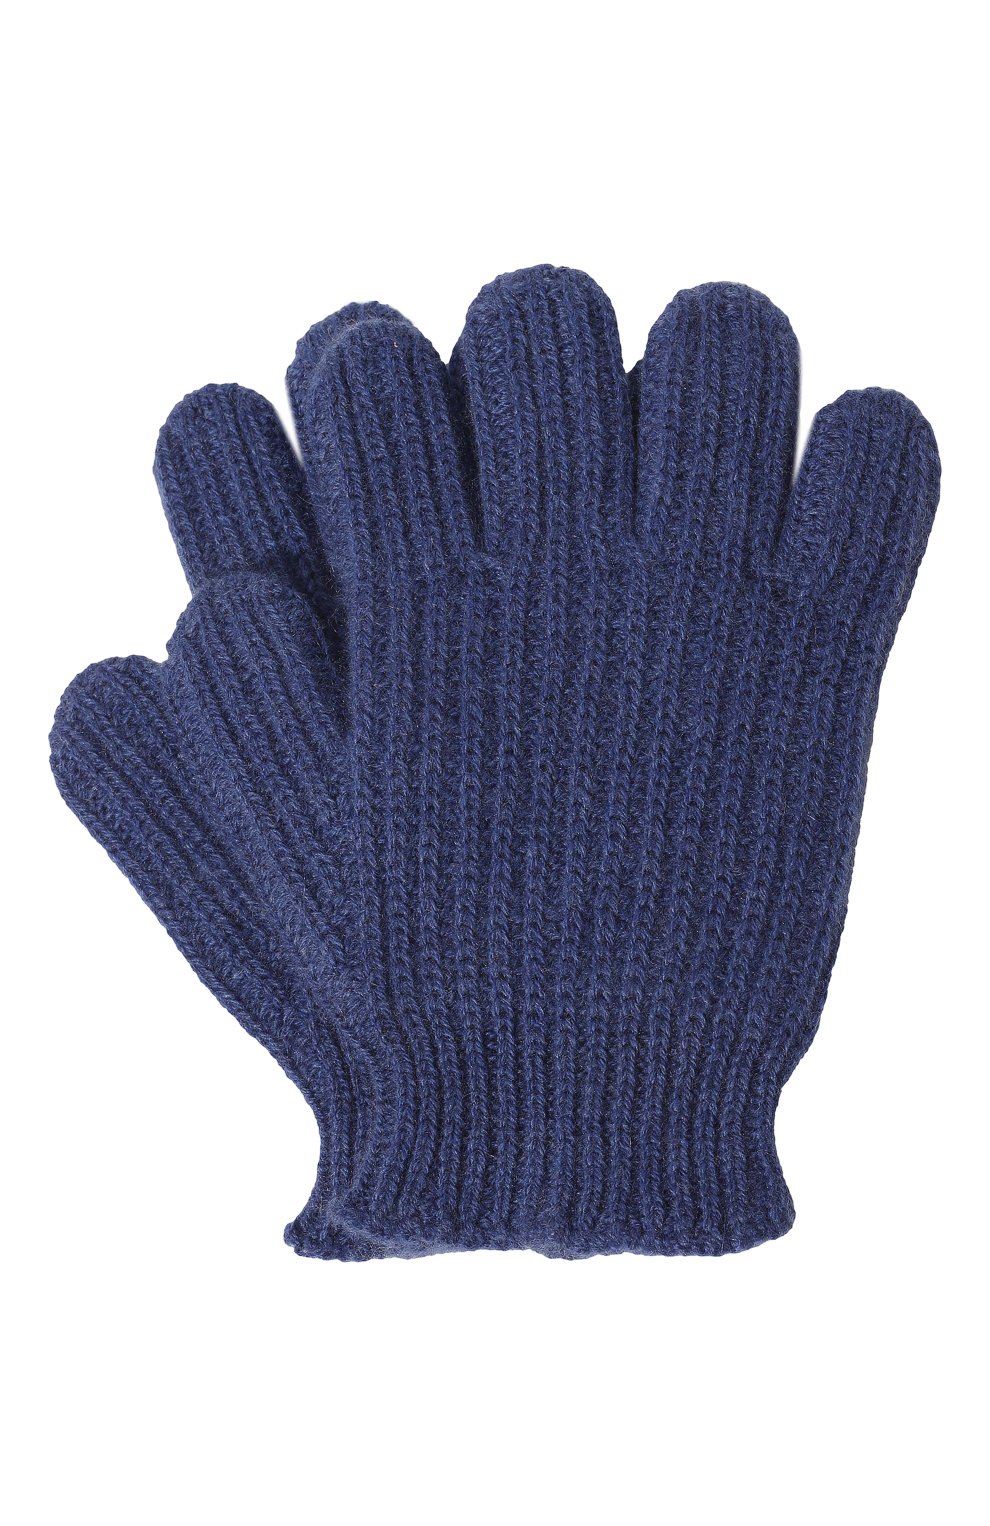 Детские кашемировые перчатки GIORGETTI CASHMERE темно-синего цвета, арт. MB1855 | Фото 1 (Материал: Текстиль, Кашемир, Шерсть)